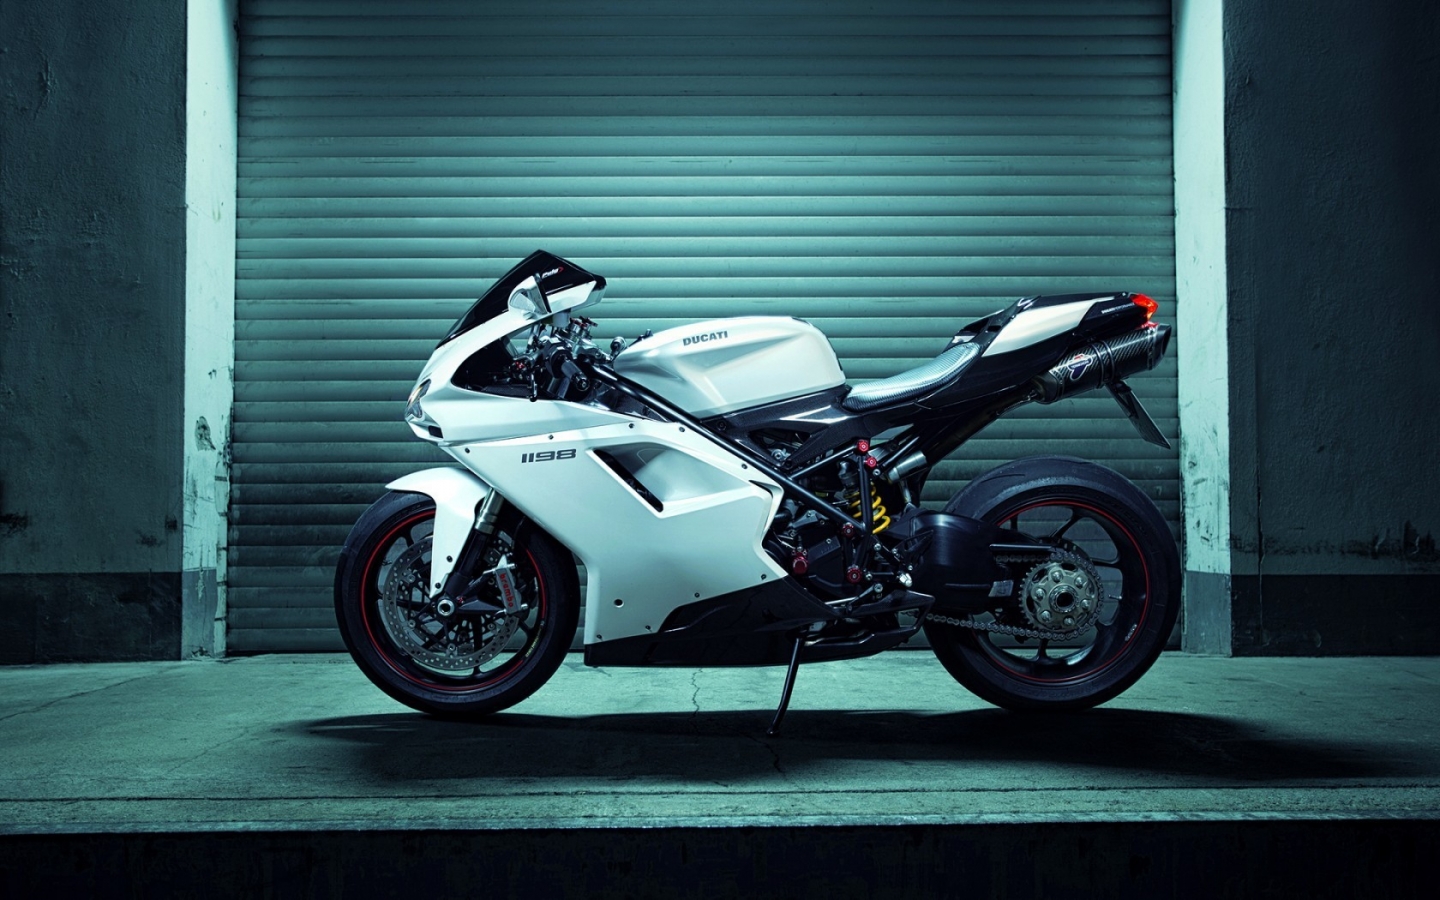 White Ducati 1198 for 1440 x 900 widescreen resolution